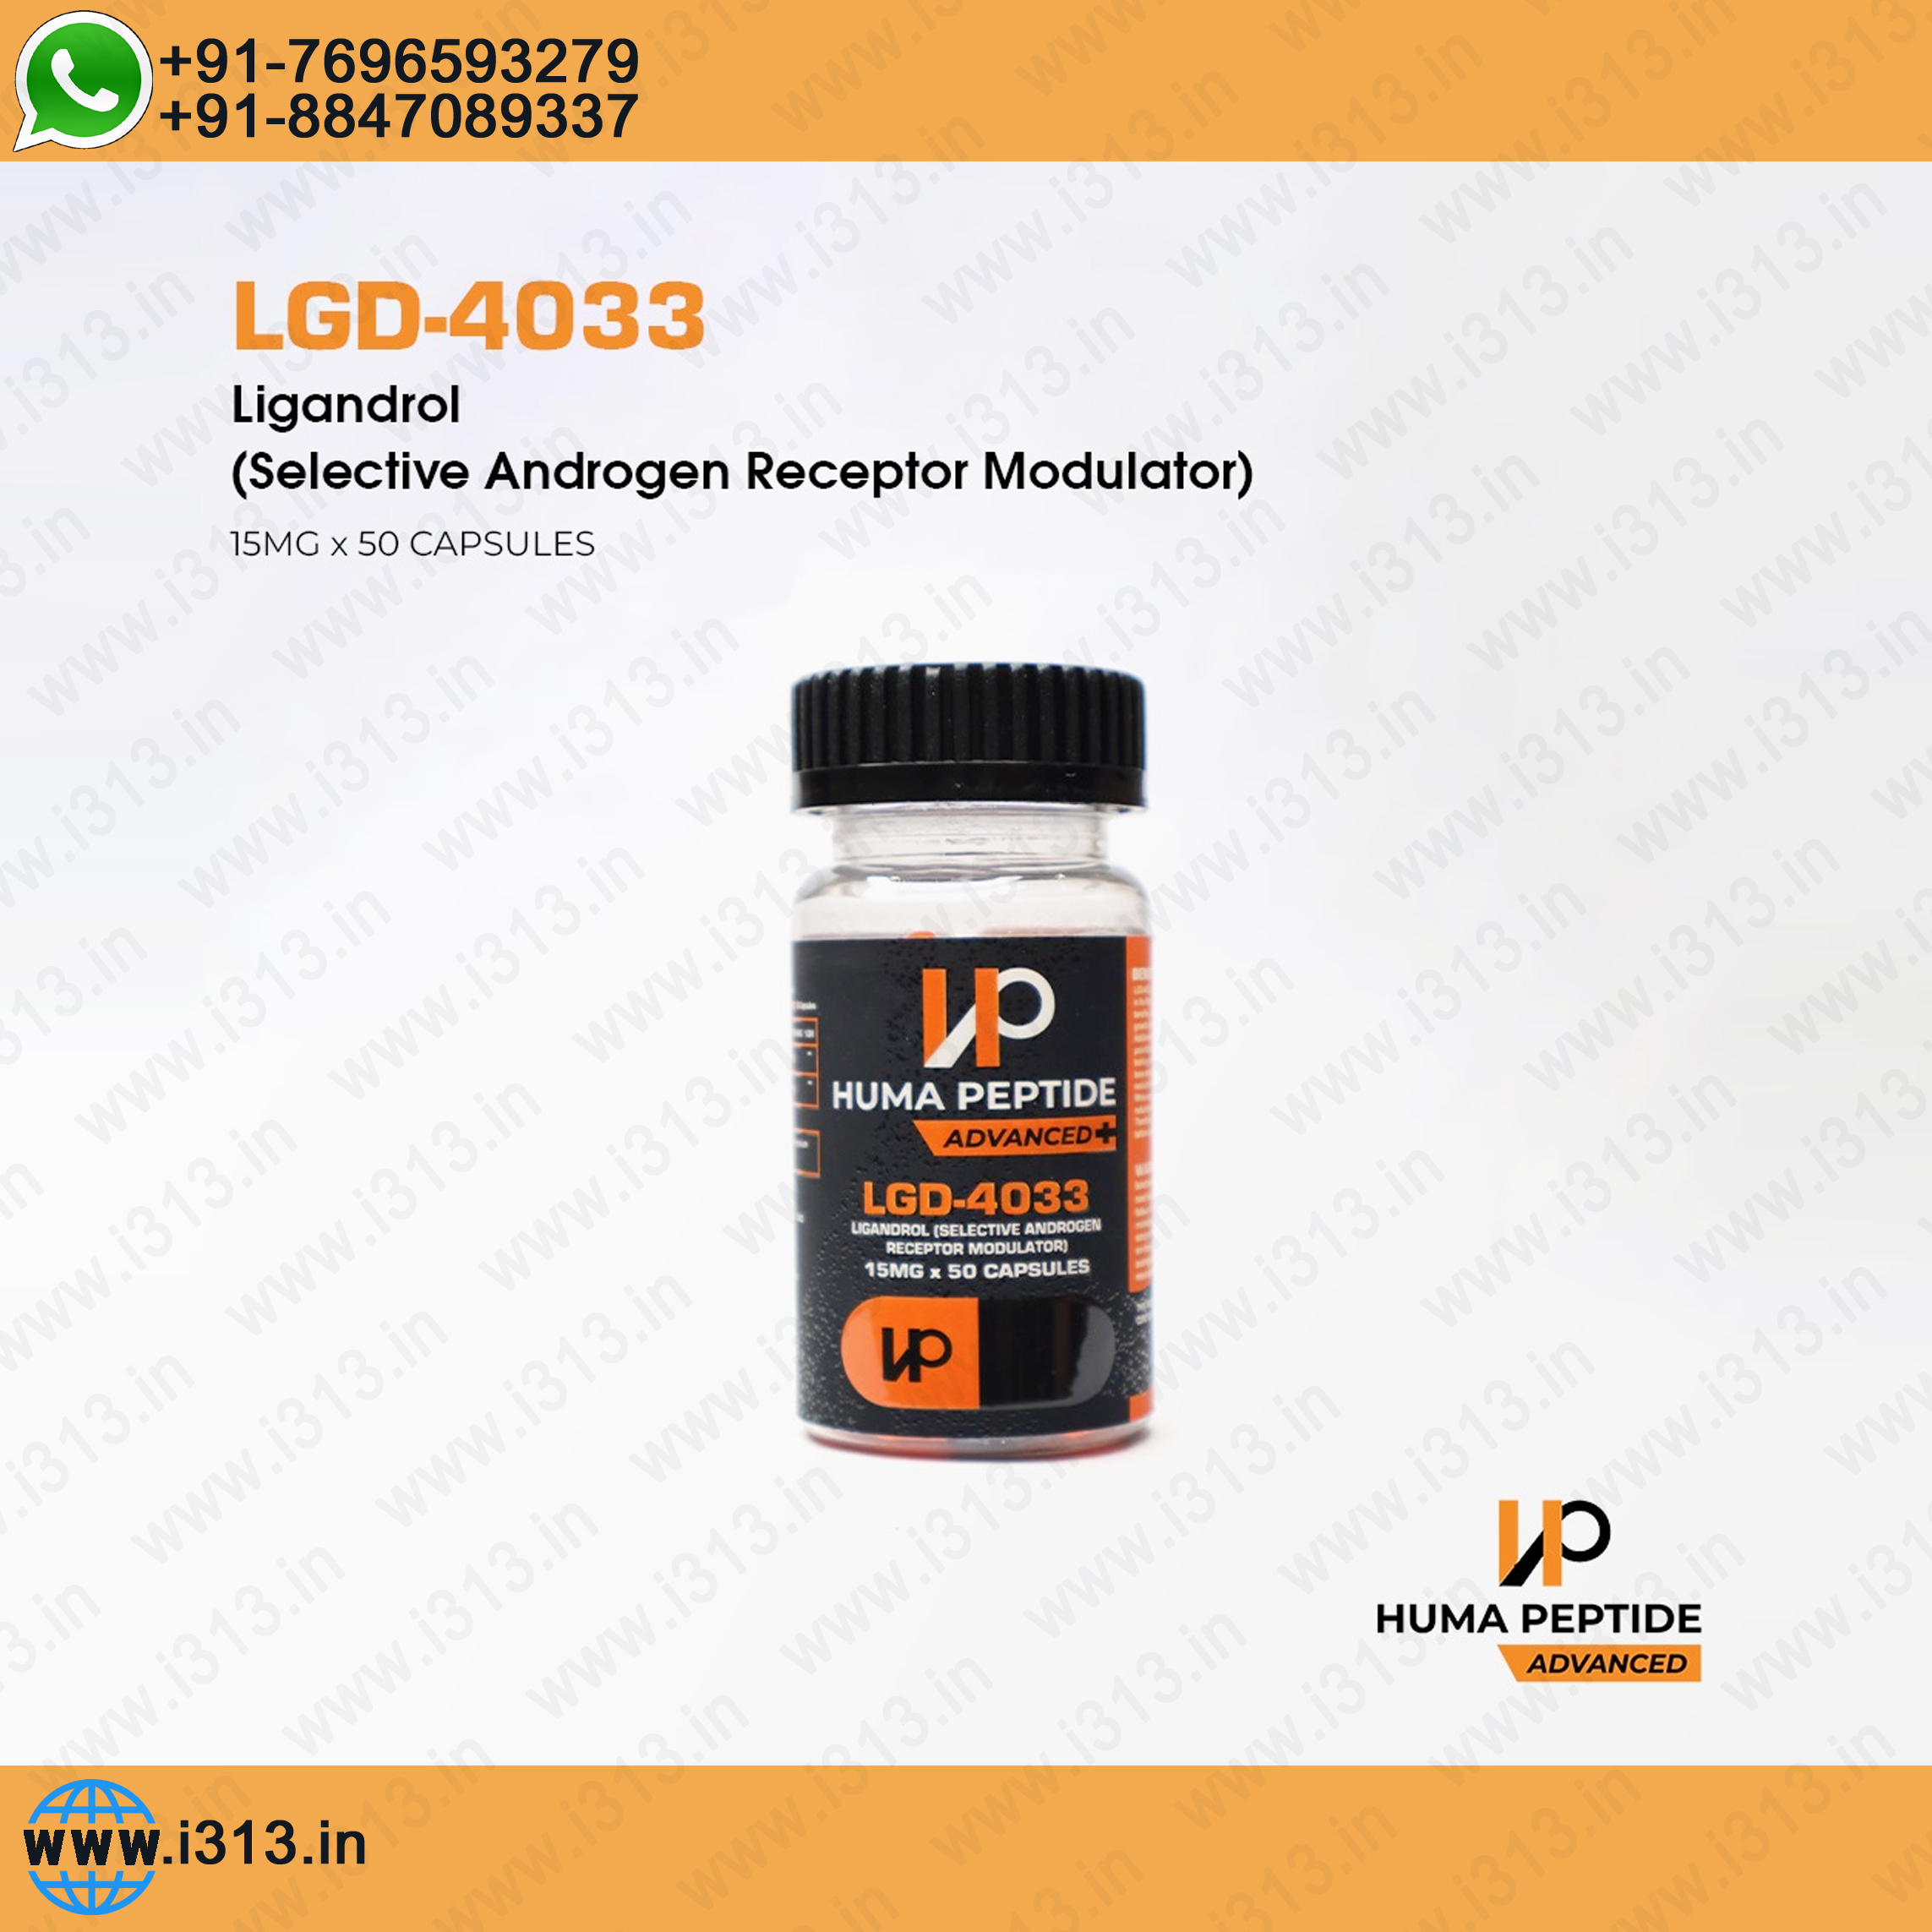 Huma Peptide LGD-4033